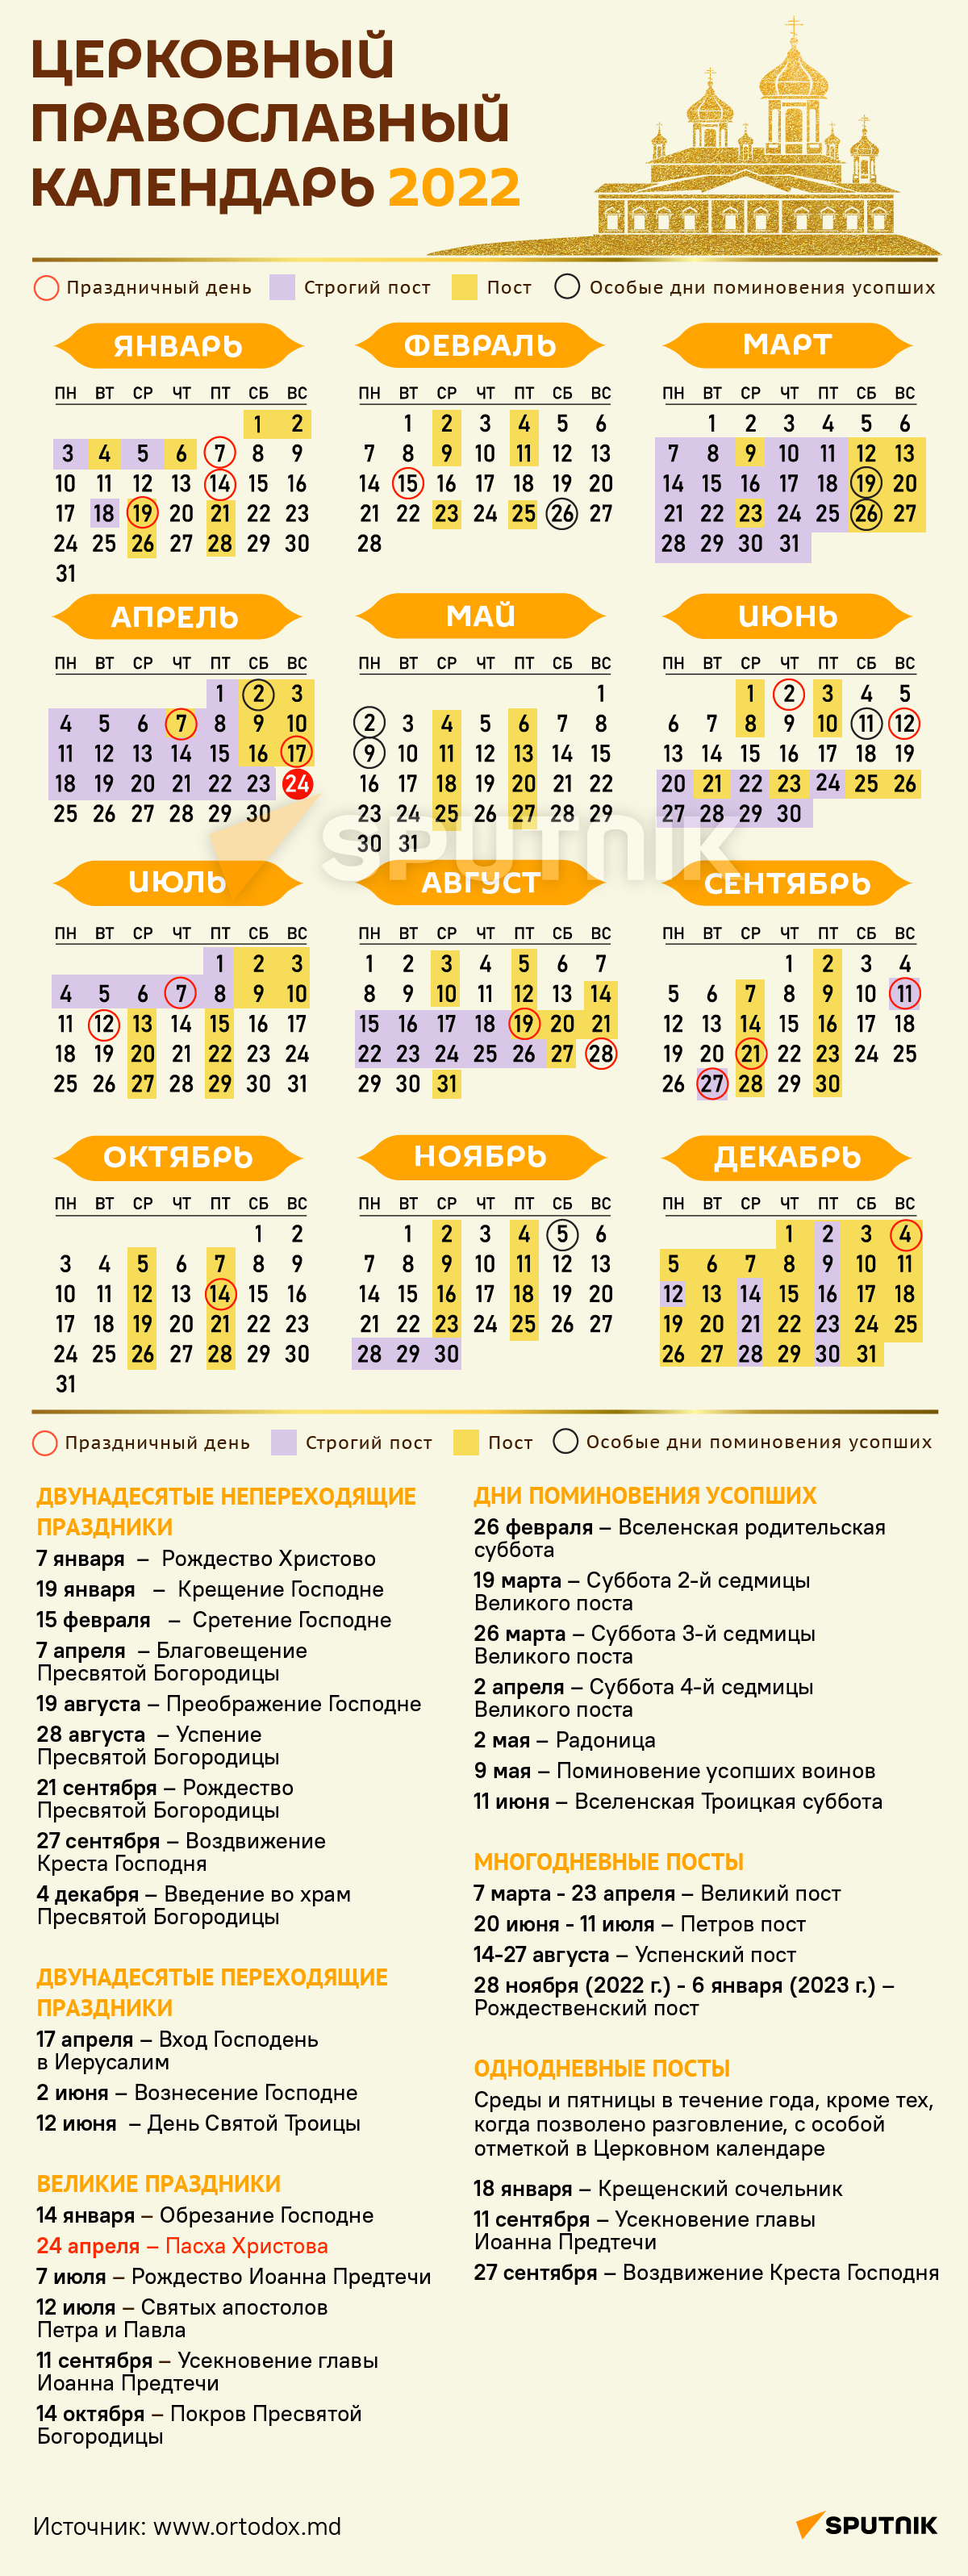 праздники 2022 церковный календарь православные